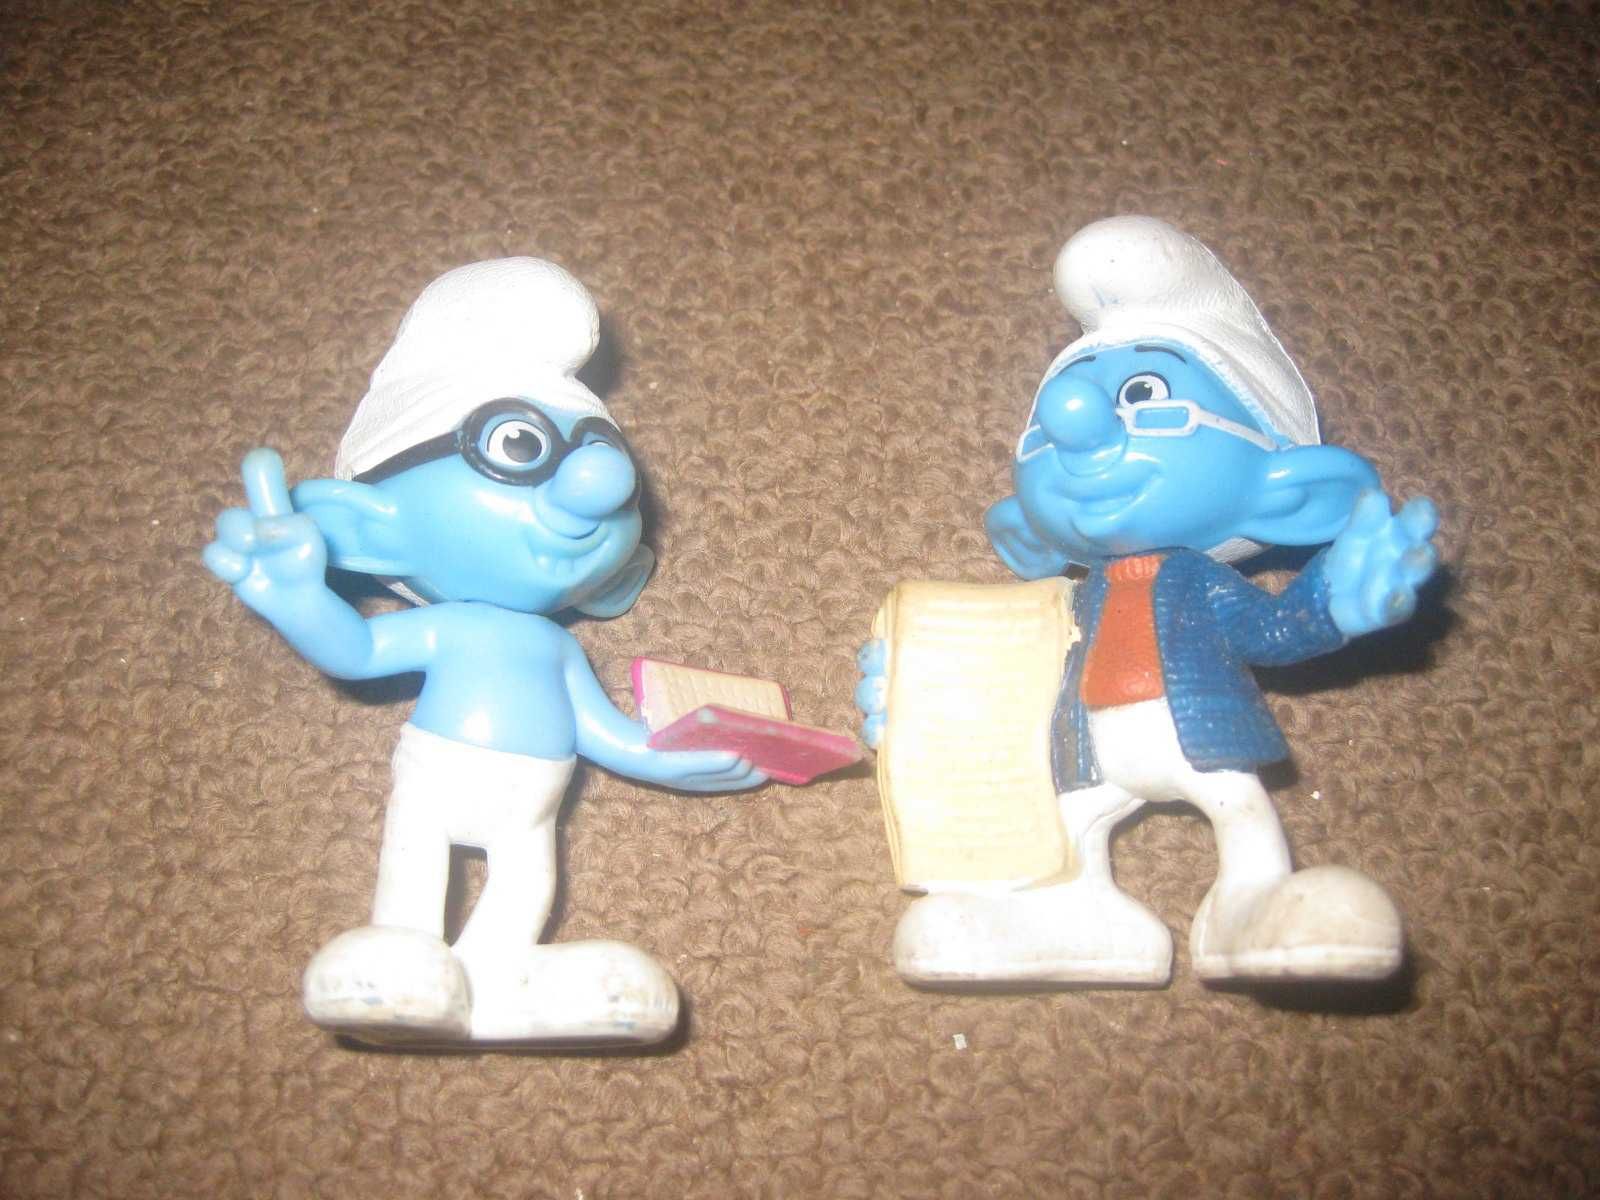 8 Bonecos/Figuras Colecionáveis dos "Smurfs"